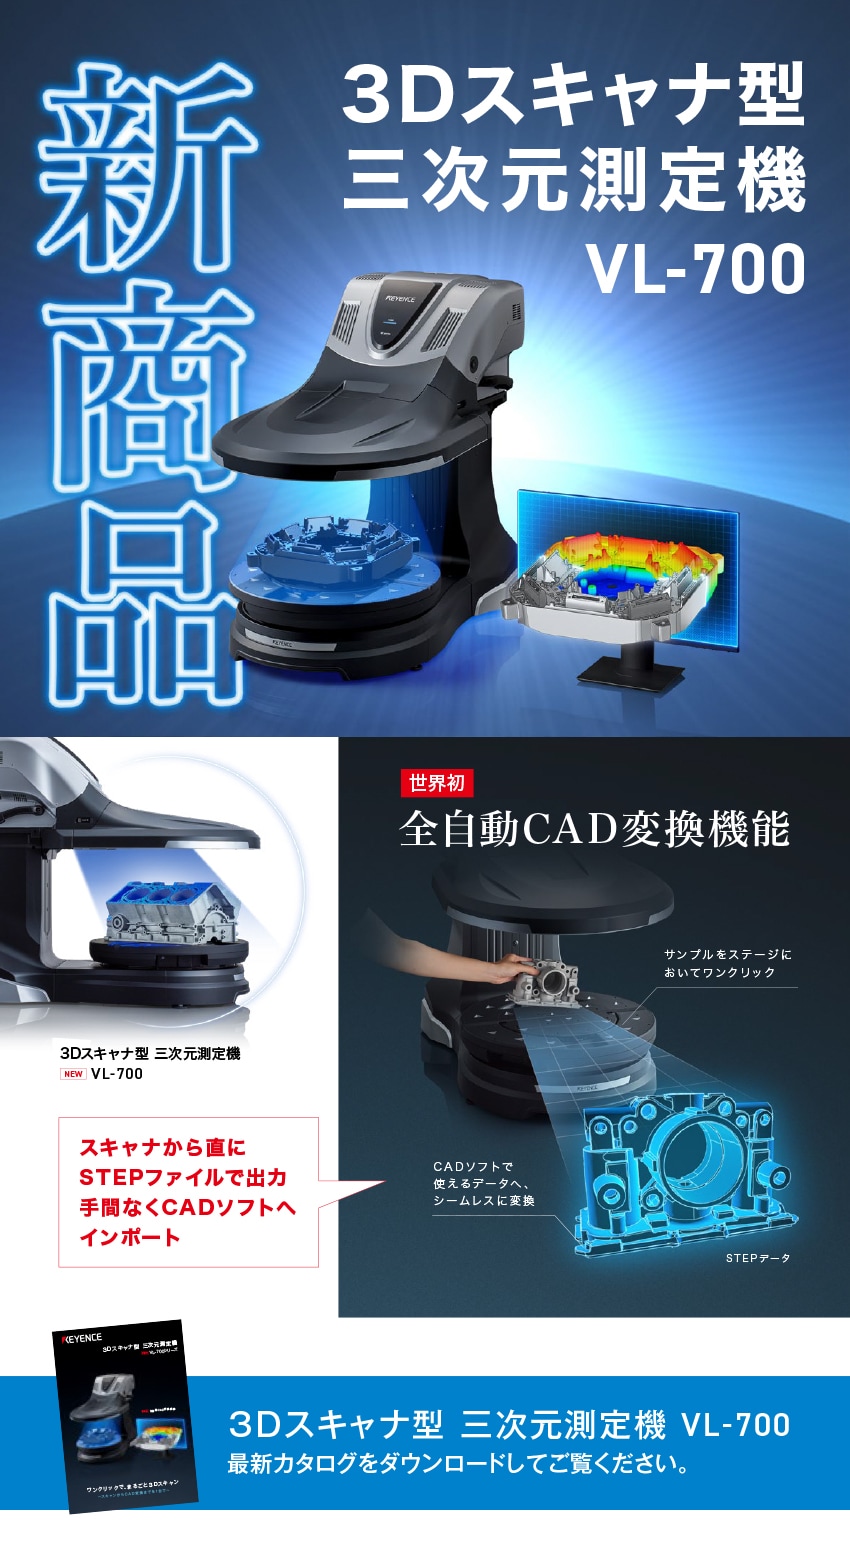 新商品 3Dスキャナ型三次元測定機VL-700